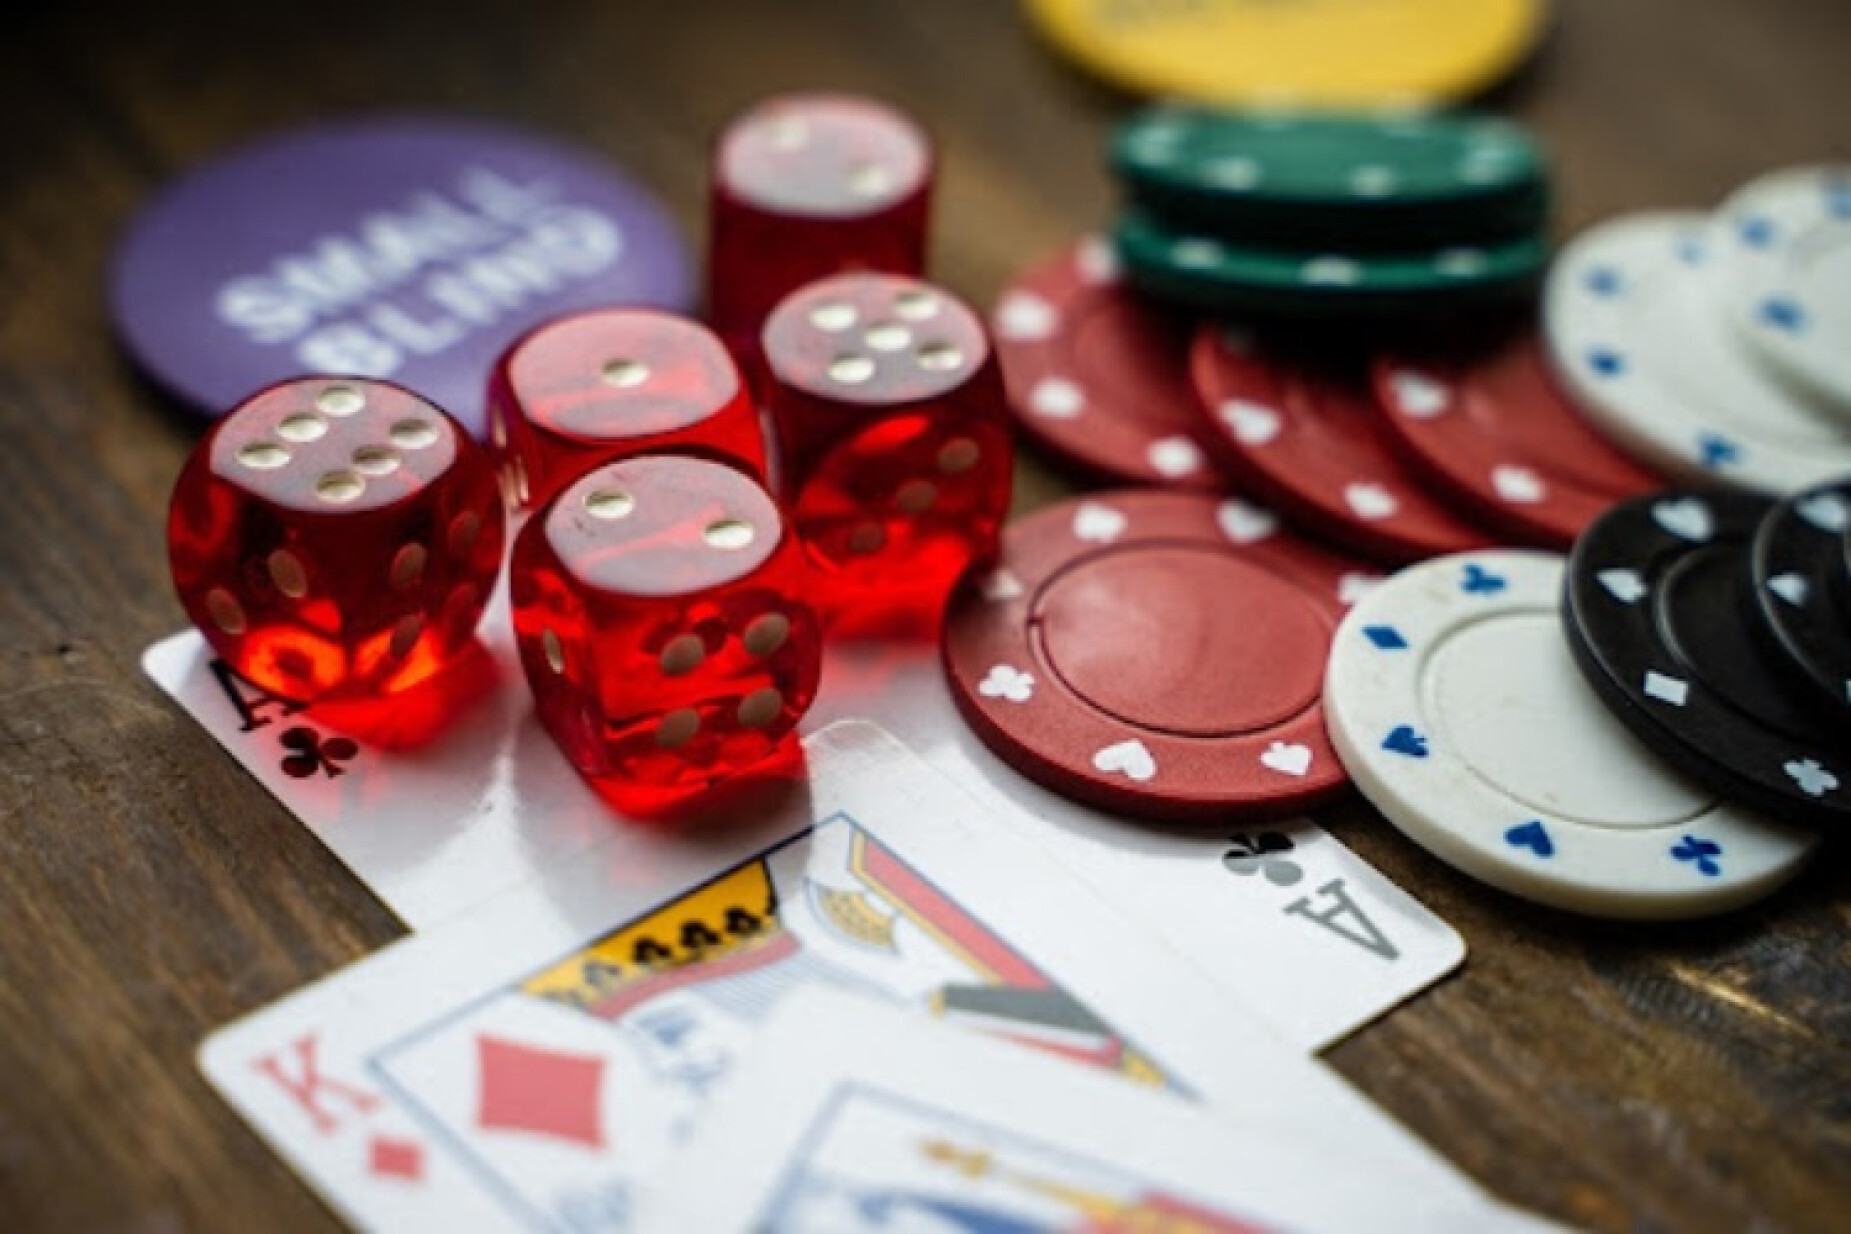 Blackjack Online: Dicas e Melhores Casinos Para Jogar 2023